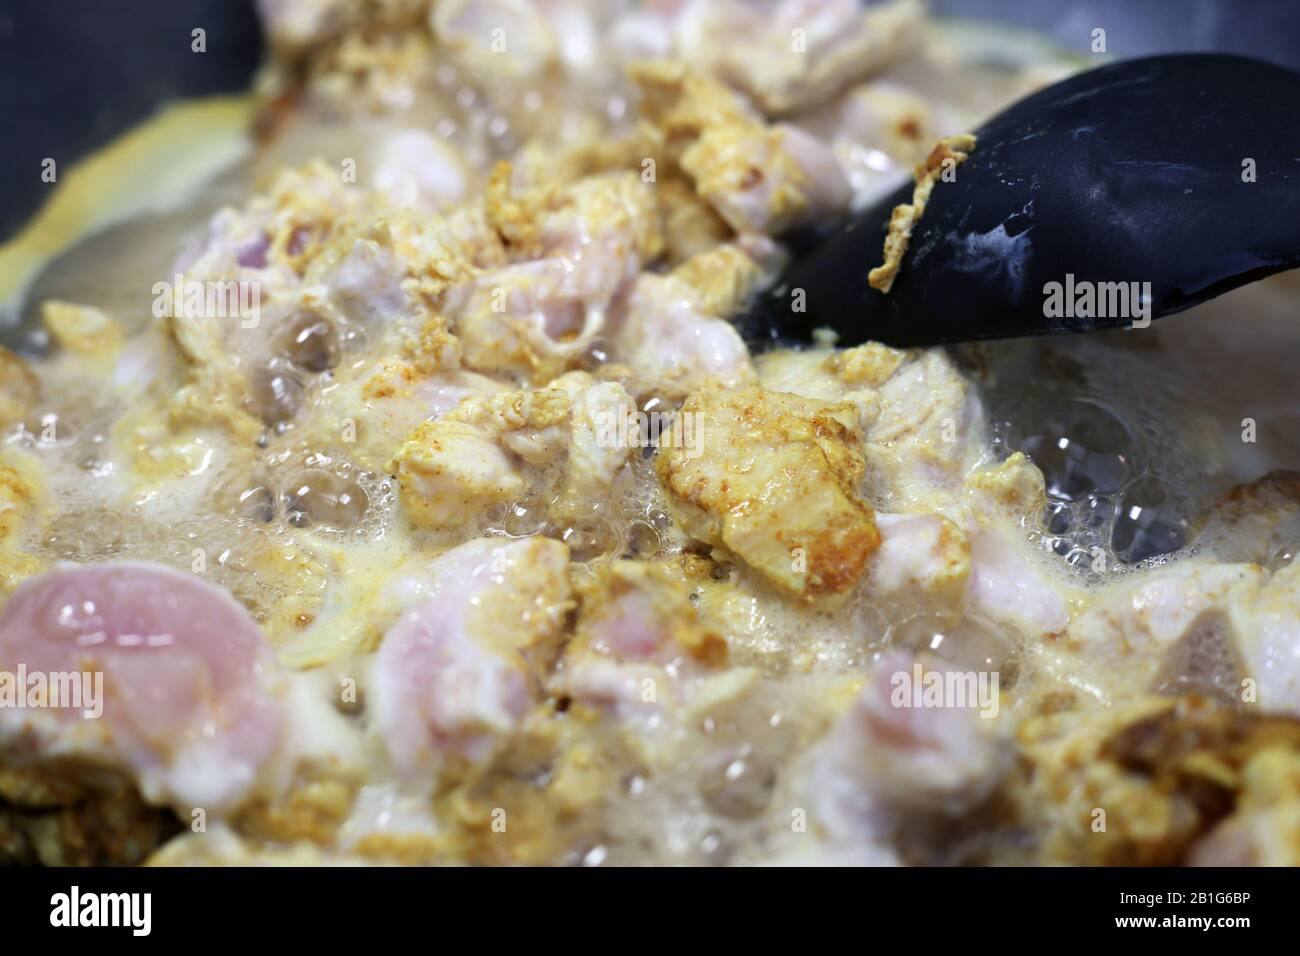 Pfanne braten/kochen einige Hühnerfilets mit bunten Gewürzen wie Curry und getrocknetem Pfeffer. Kochendes, aber gesundes Geflügelfleisch. Stockfoto